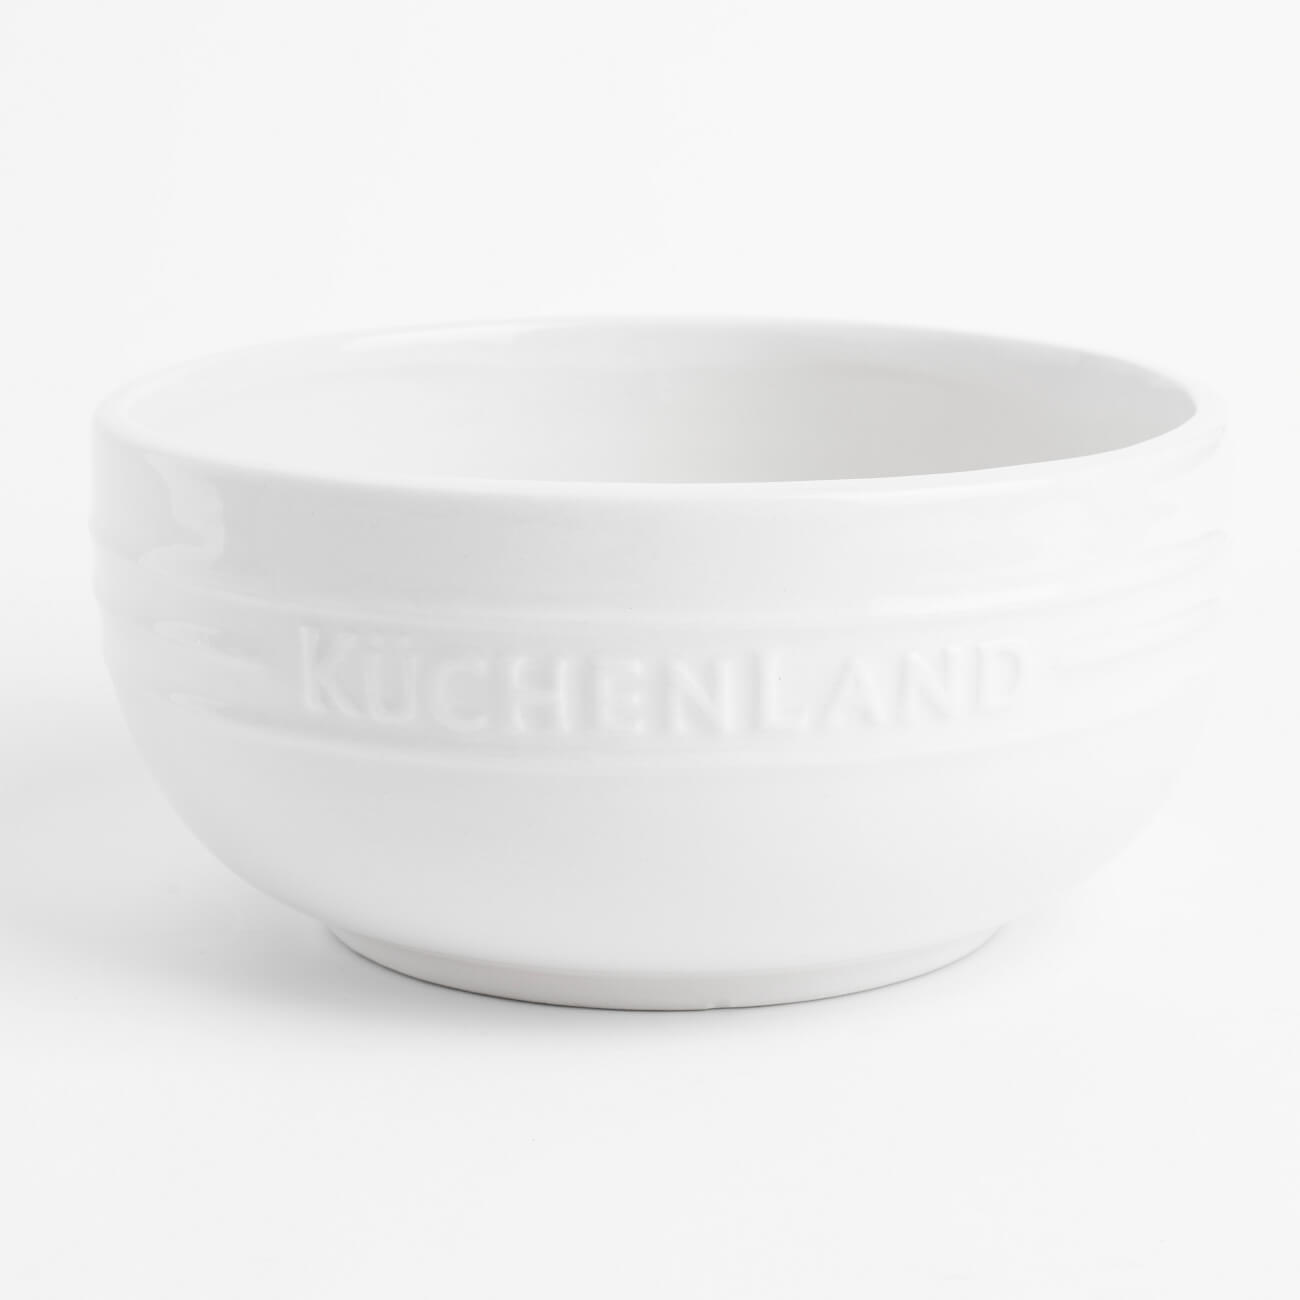 Пиала, 11х5 см, керамика, белая, Ceramo kuchenland подставка для кухонных принадлежностей 15 см керамика белая ceramo